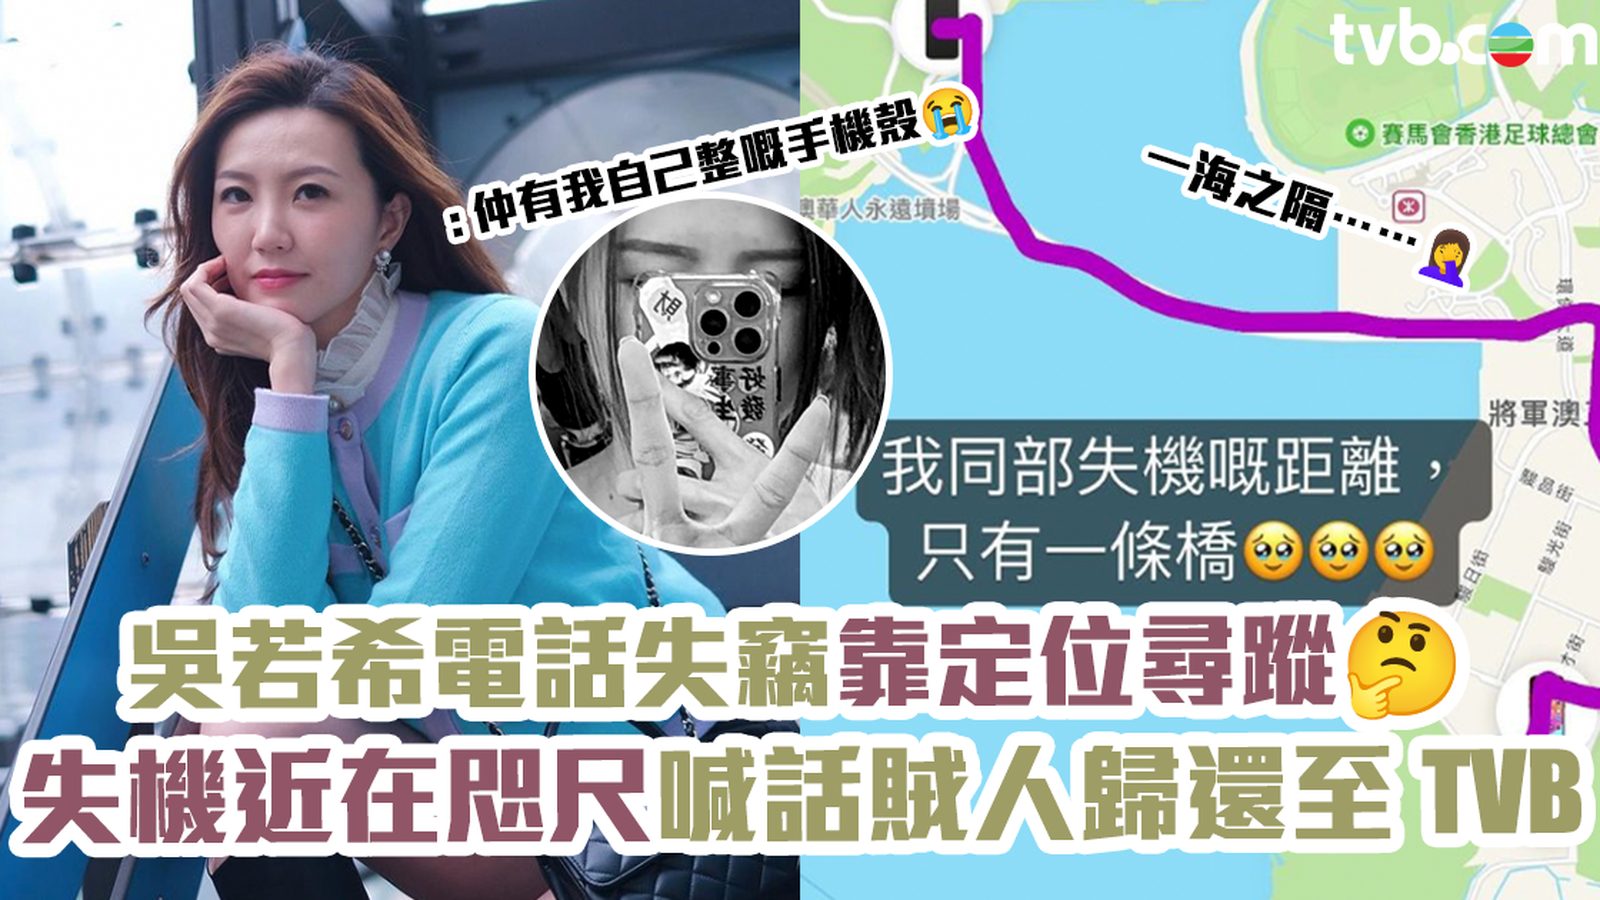 吳若希電話失竊與主人僅一橋之隔 Jinny無奈喊話賊人將電話歸還至TVB